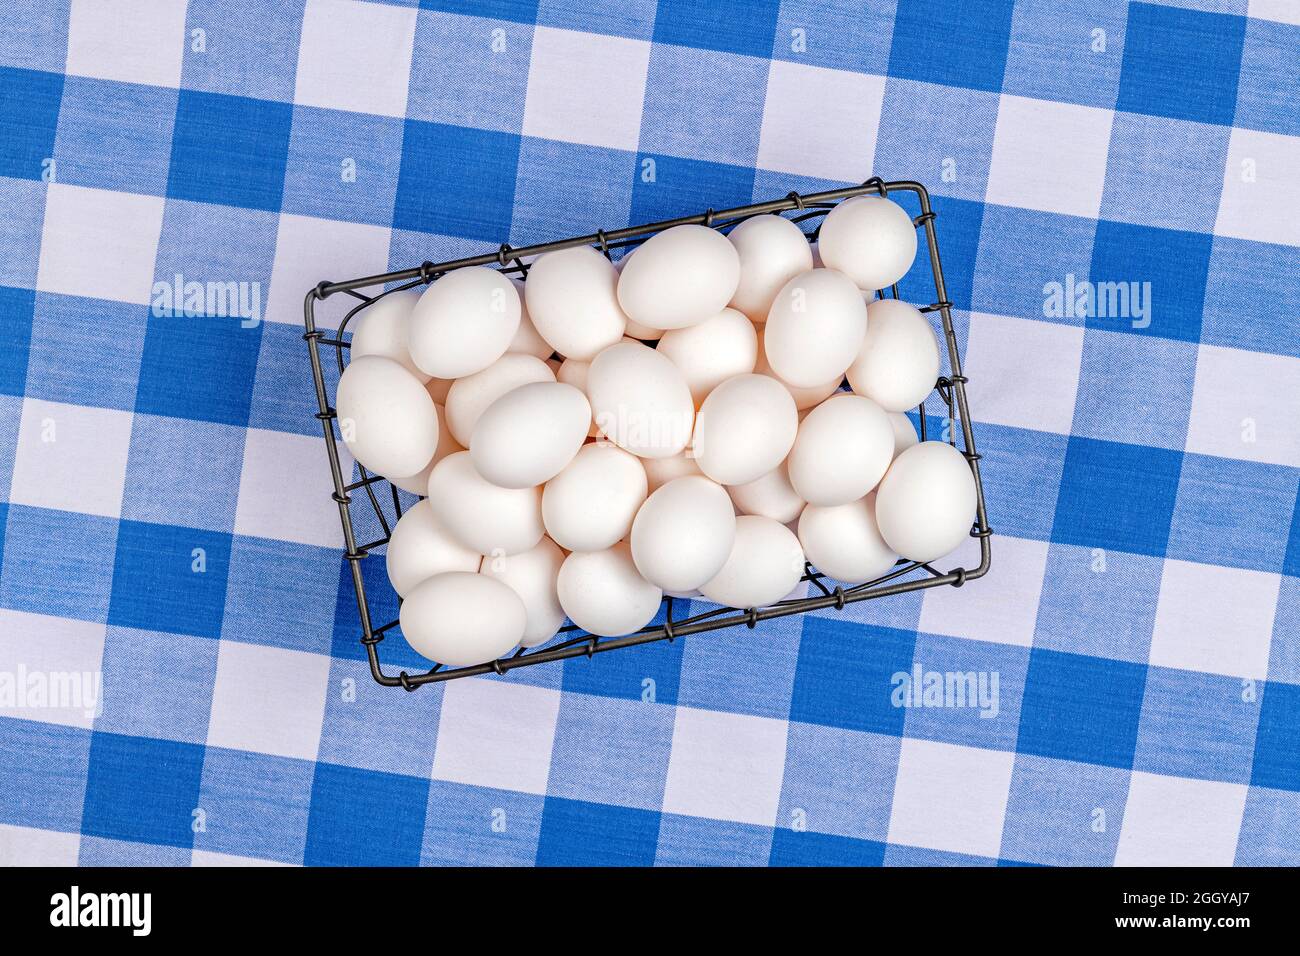 Una piccola cassa di uova fresche poggia su un tavolo coperto in una tradizionale tovaglia a scacchi blu e bianco. Foto Stock